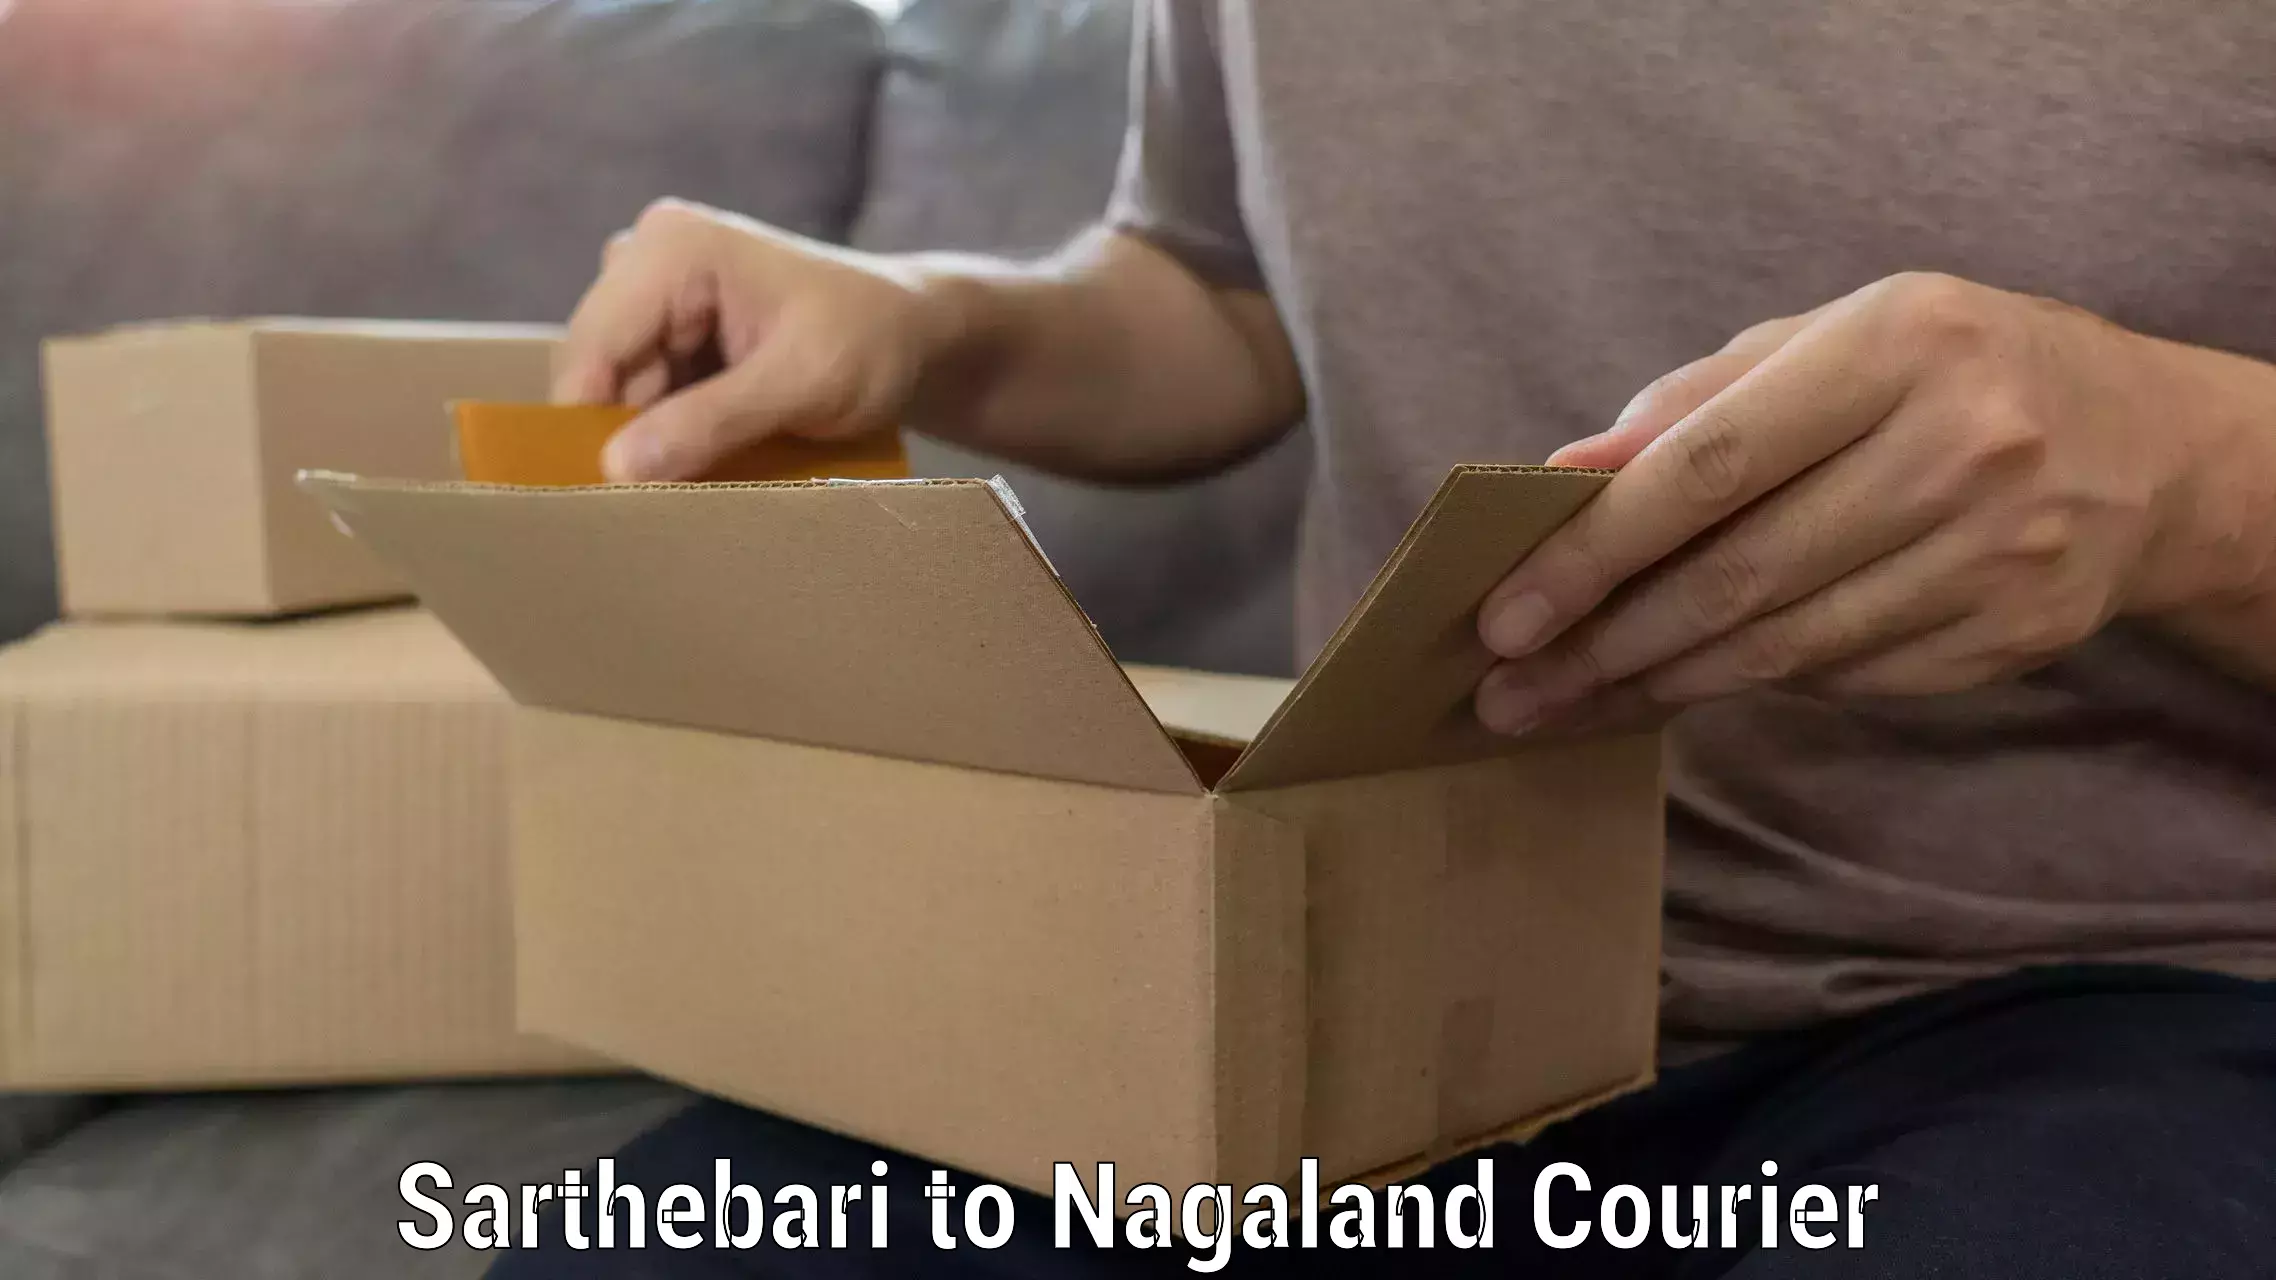 Furniture relocation experts Sarthebari to NIT Nagaland